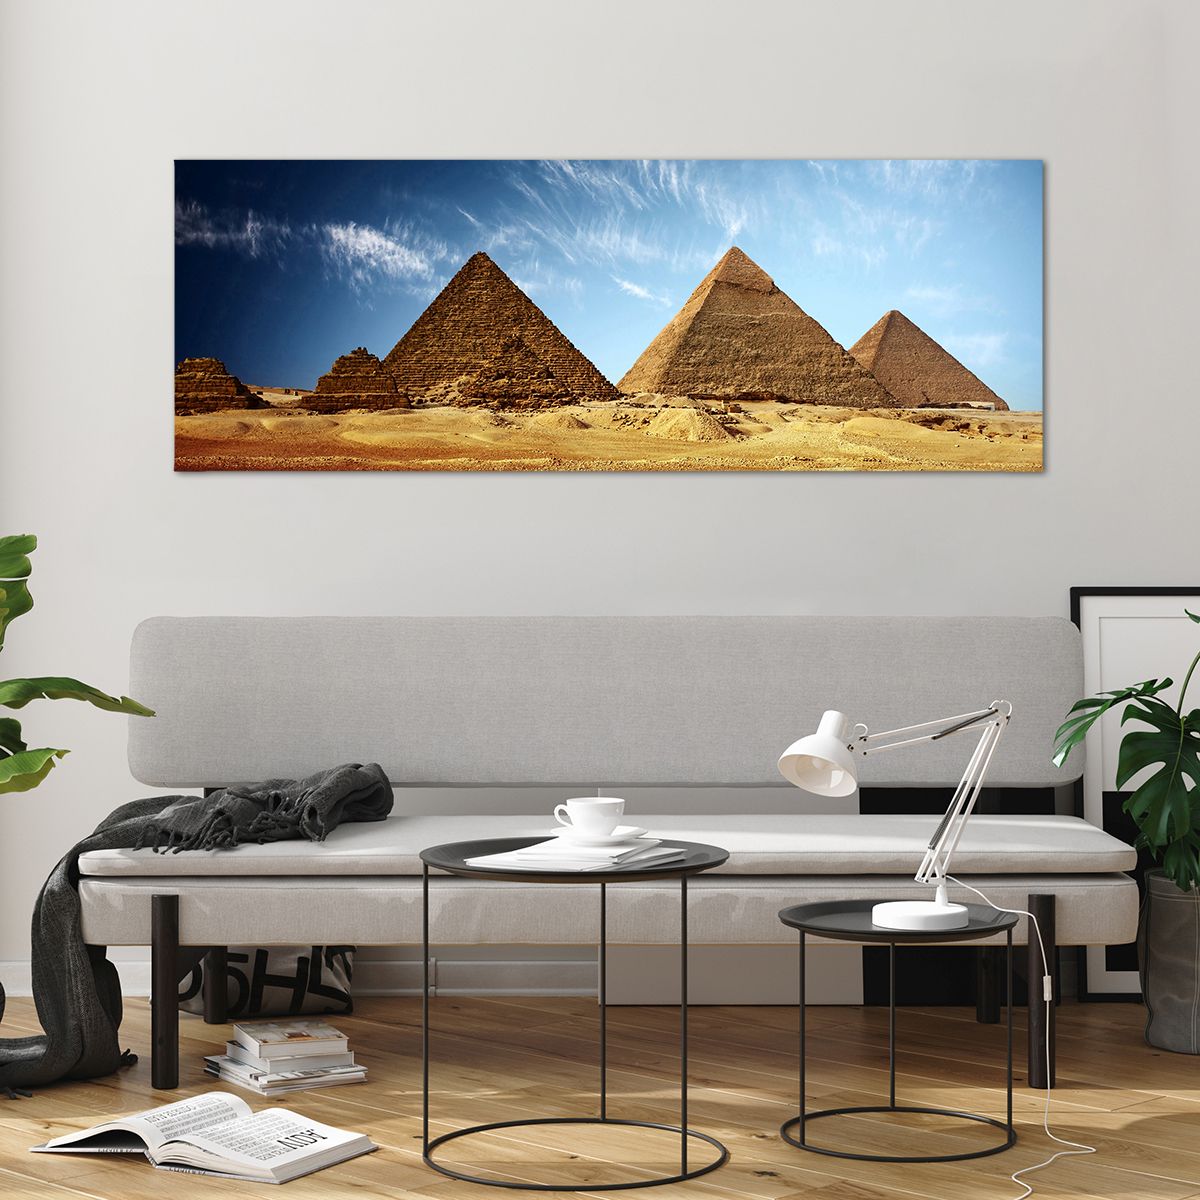 Quadro su vetro Piramidi, Quadro su vetro Architettura, Quadro su vetro Paesaggio, Quadro su vetro Egitto, Quadro su vetro Deserto